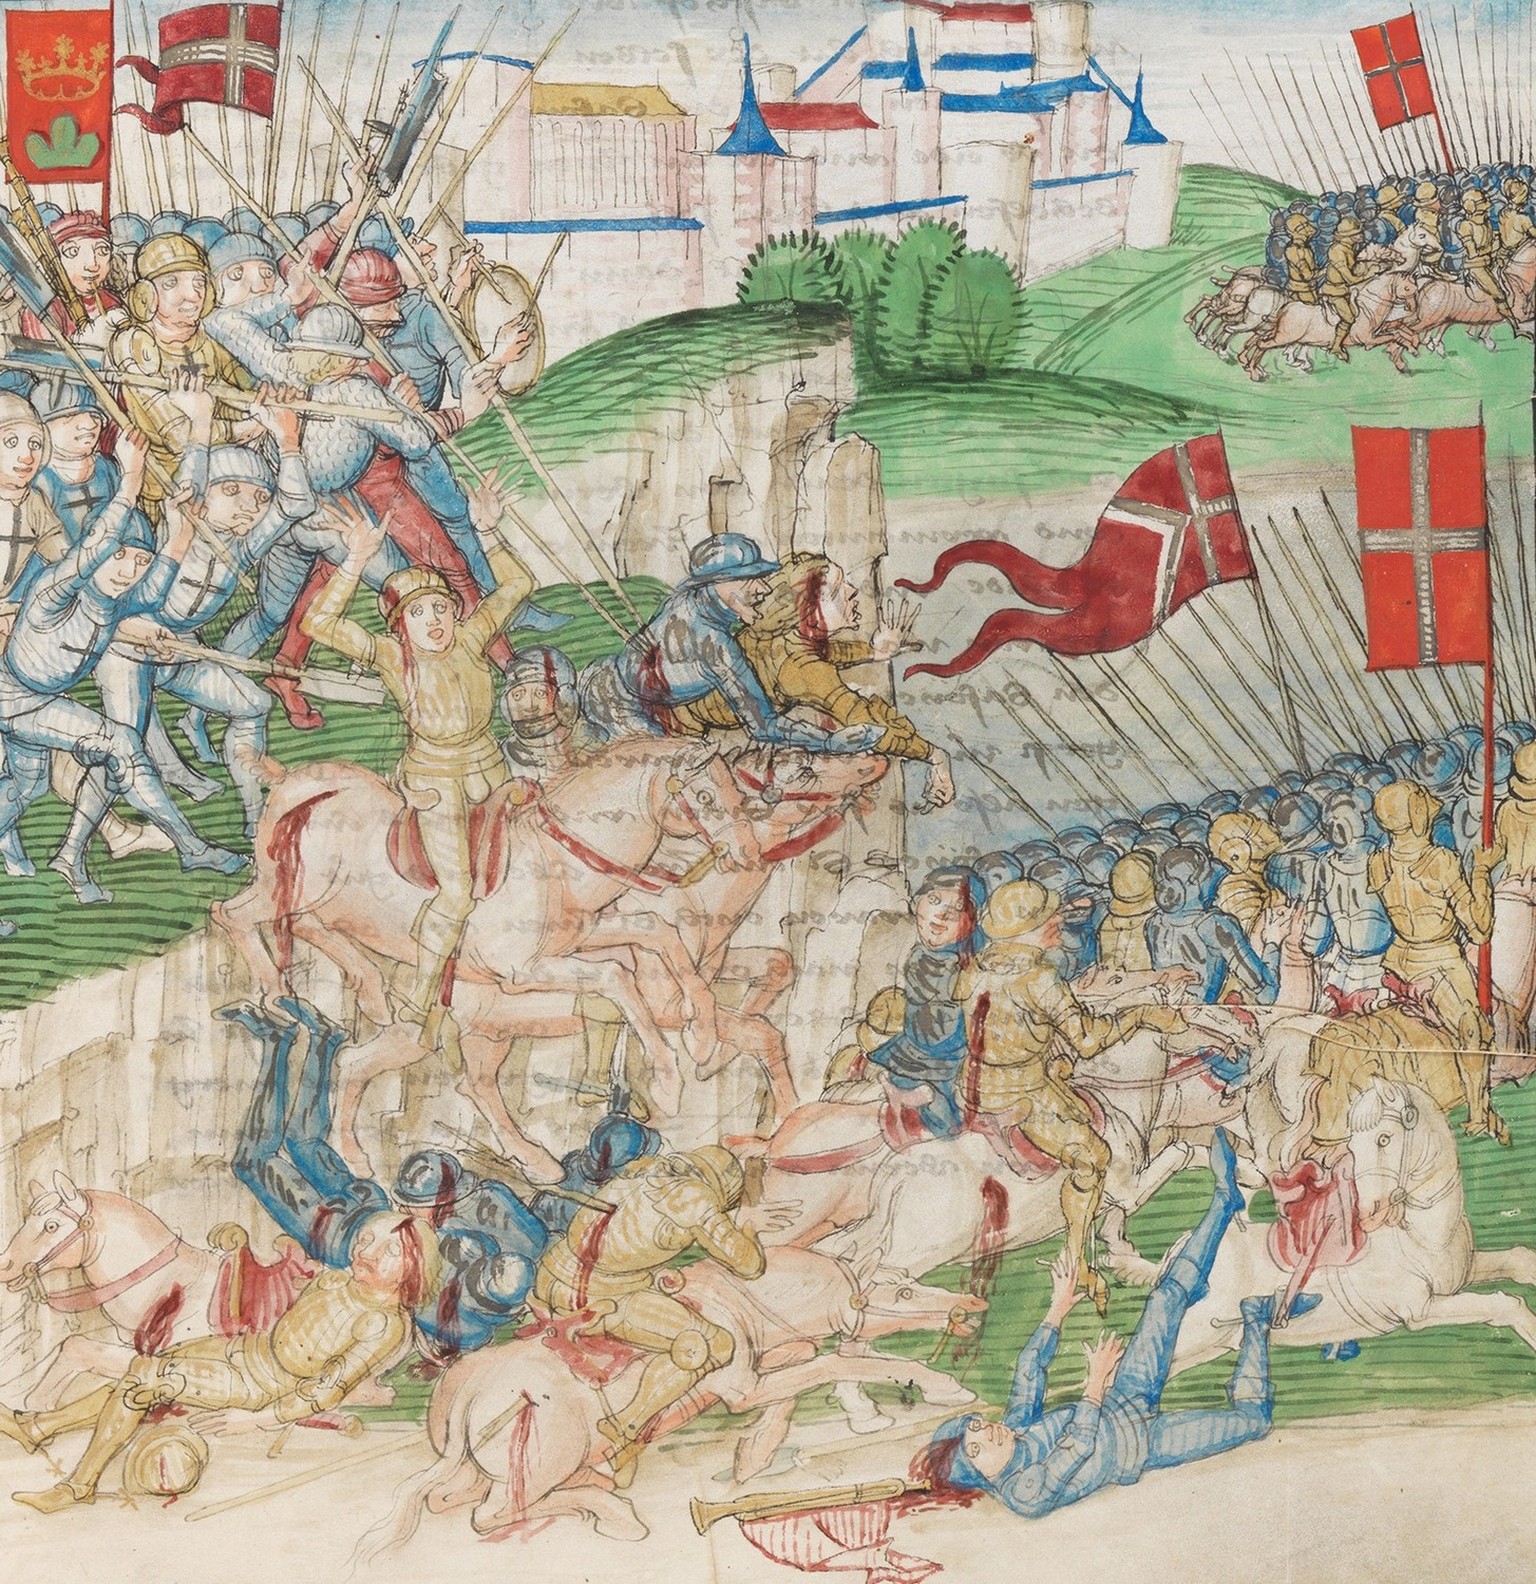 Im Nahkampf erschlagen die eidgenössischen Truppen vor Sitten über dreihundert Savoyer, 1475.
https://www.e-codices.unifr.ch/de/bbb/Mss-hh-I0003//557